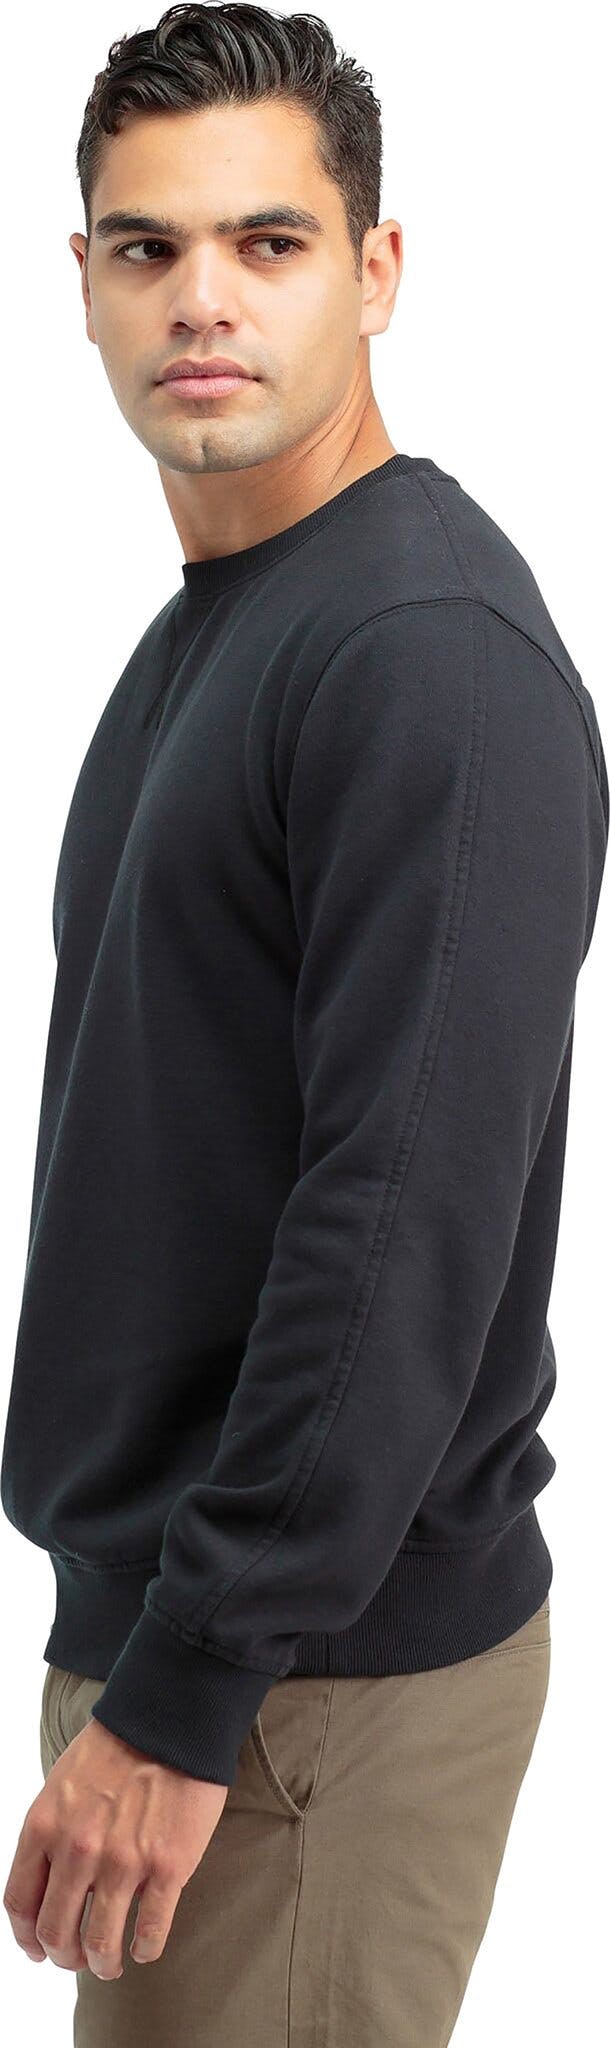 Product gallery image number 3 for product Fleece Sweatshirt - Men's